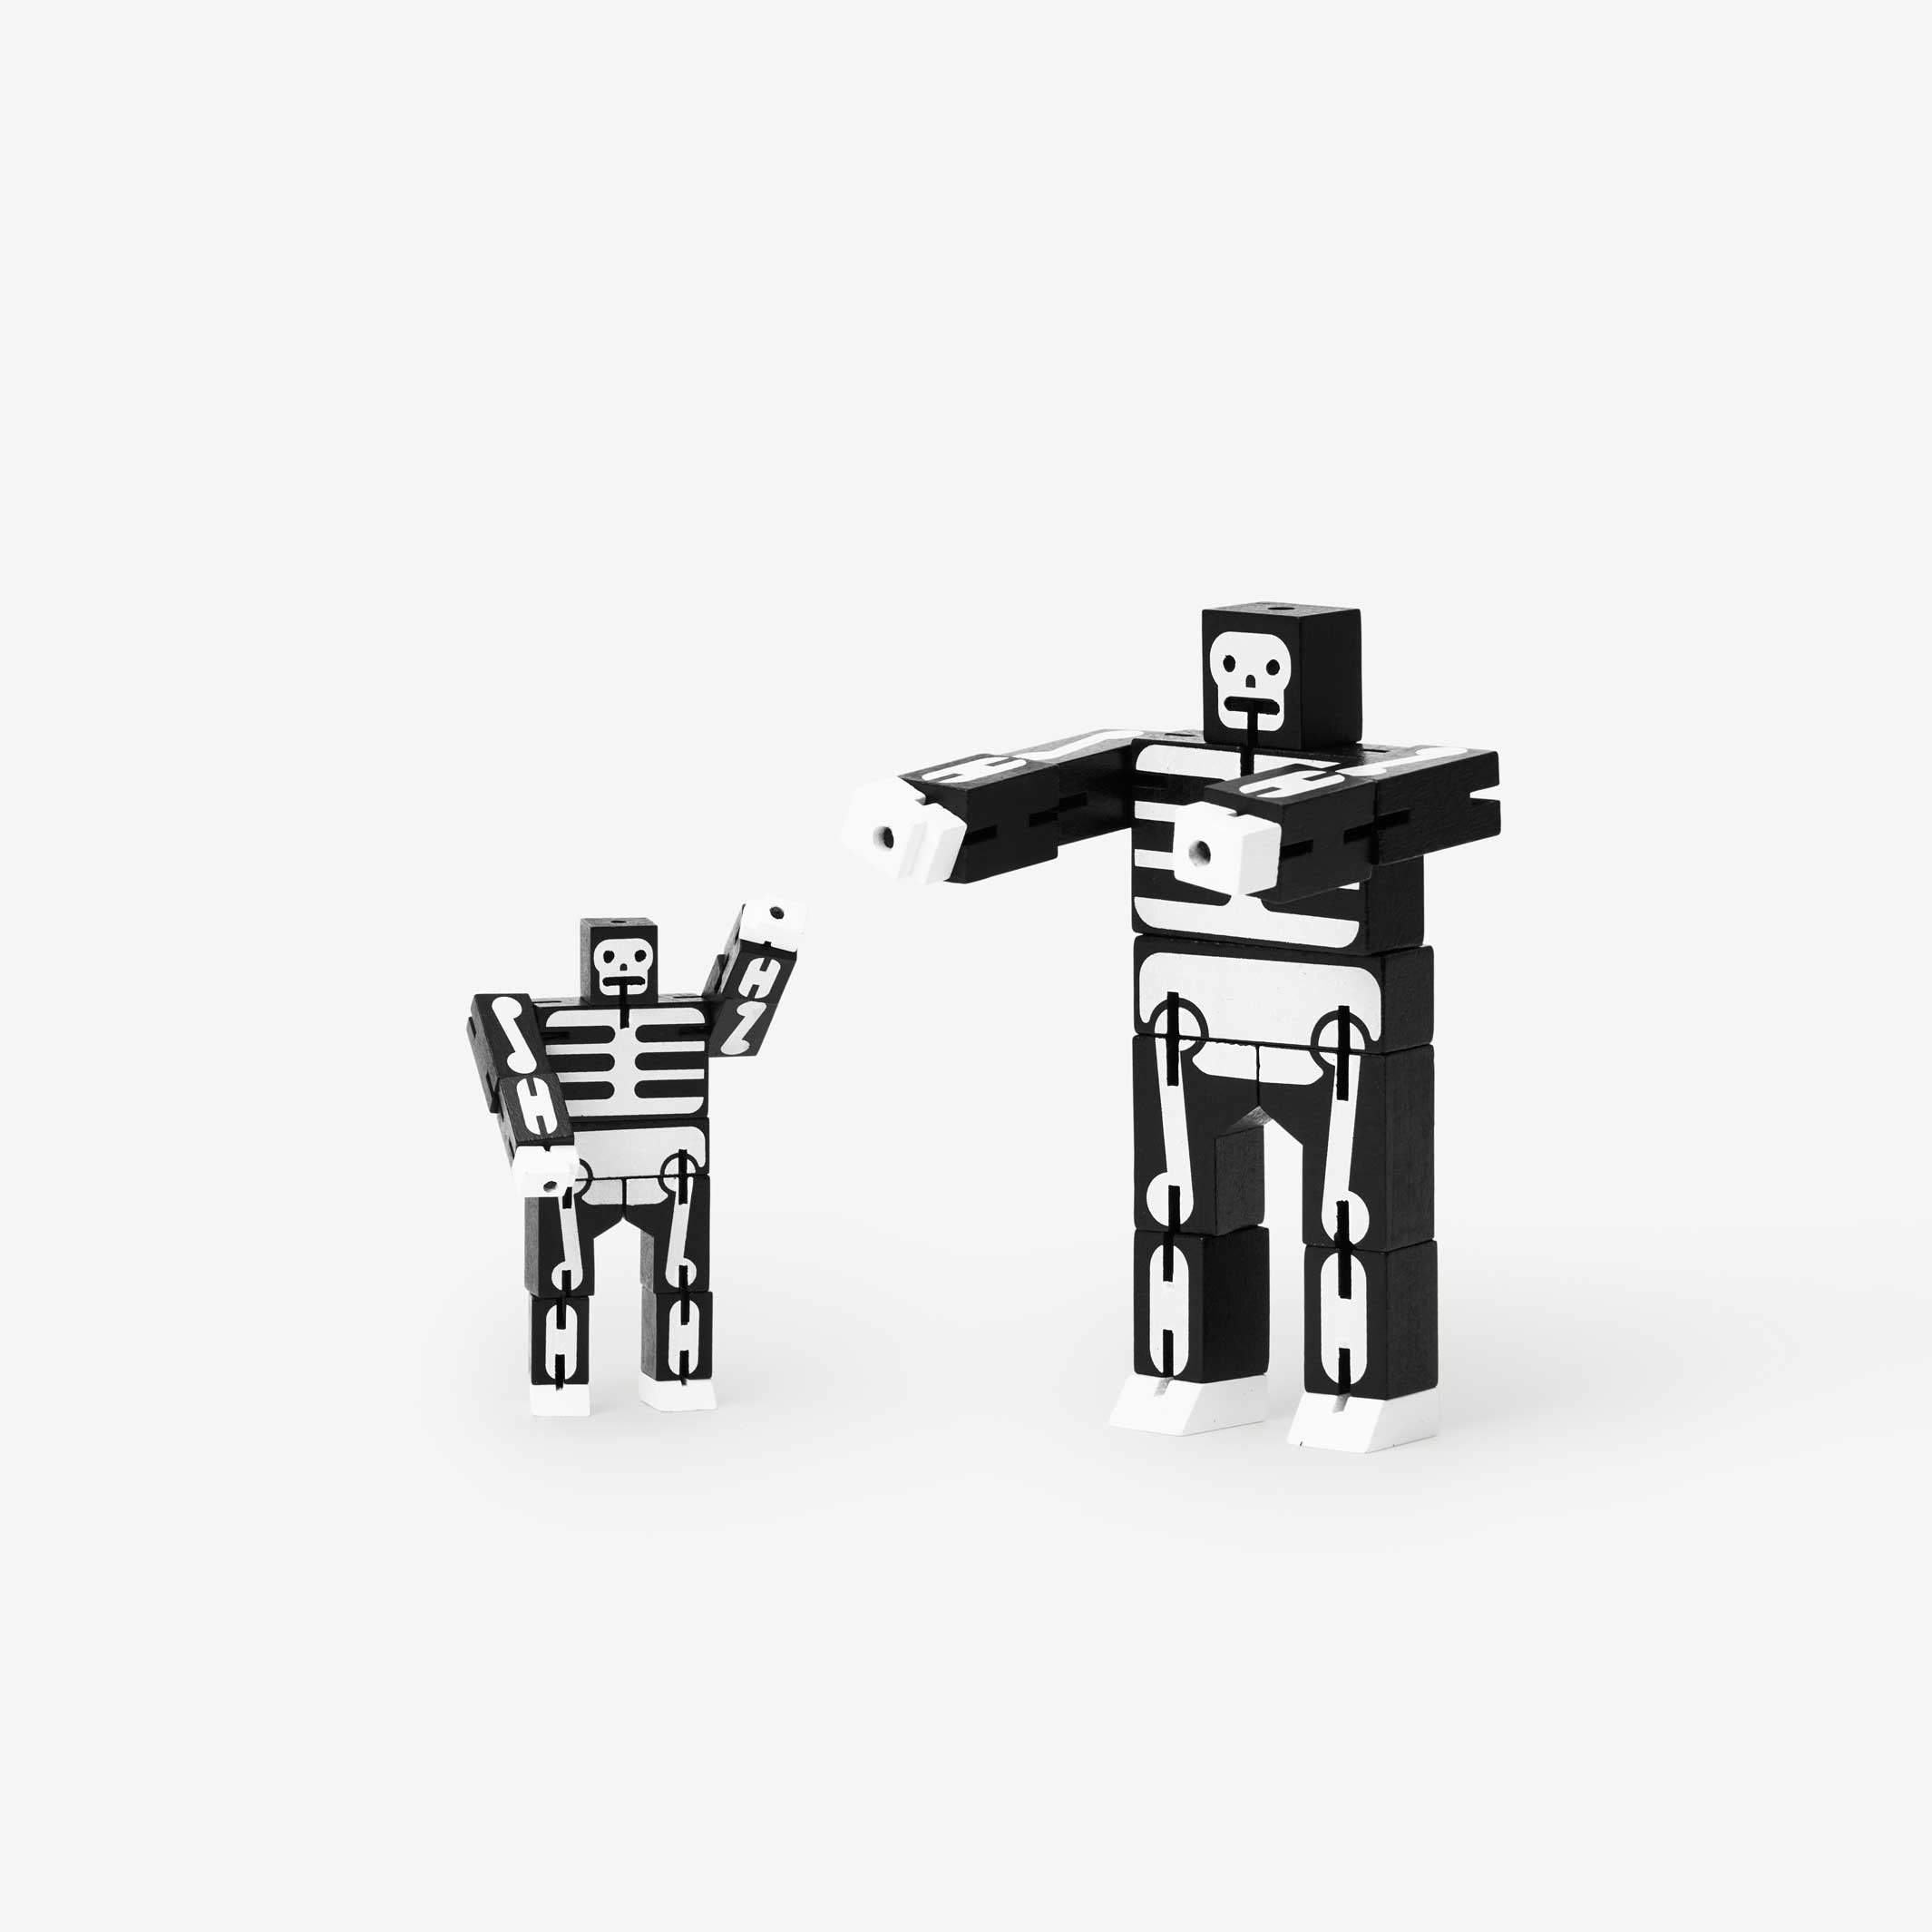 CUBEBOT® Petit SQUELETTE | ROBOTS PUZZLES 3D | David Semaines | Sont conscients